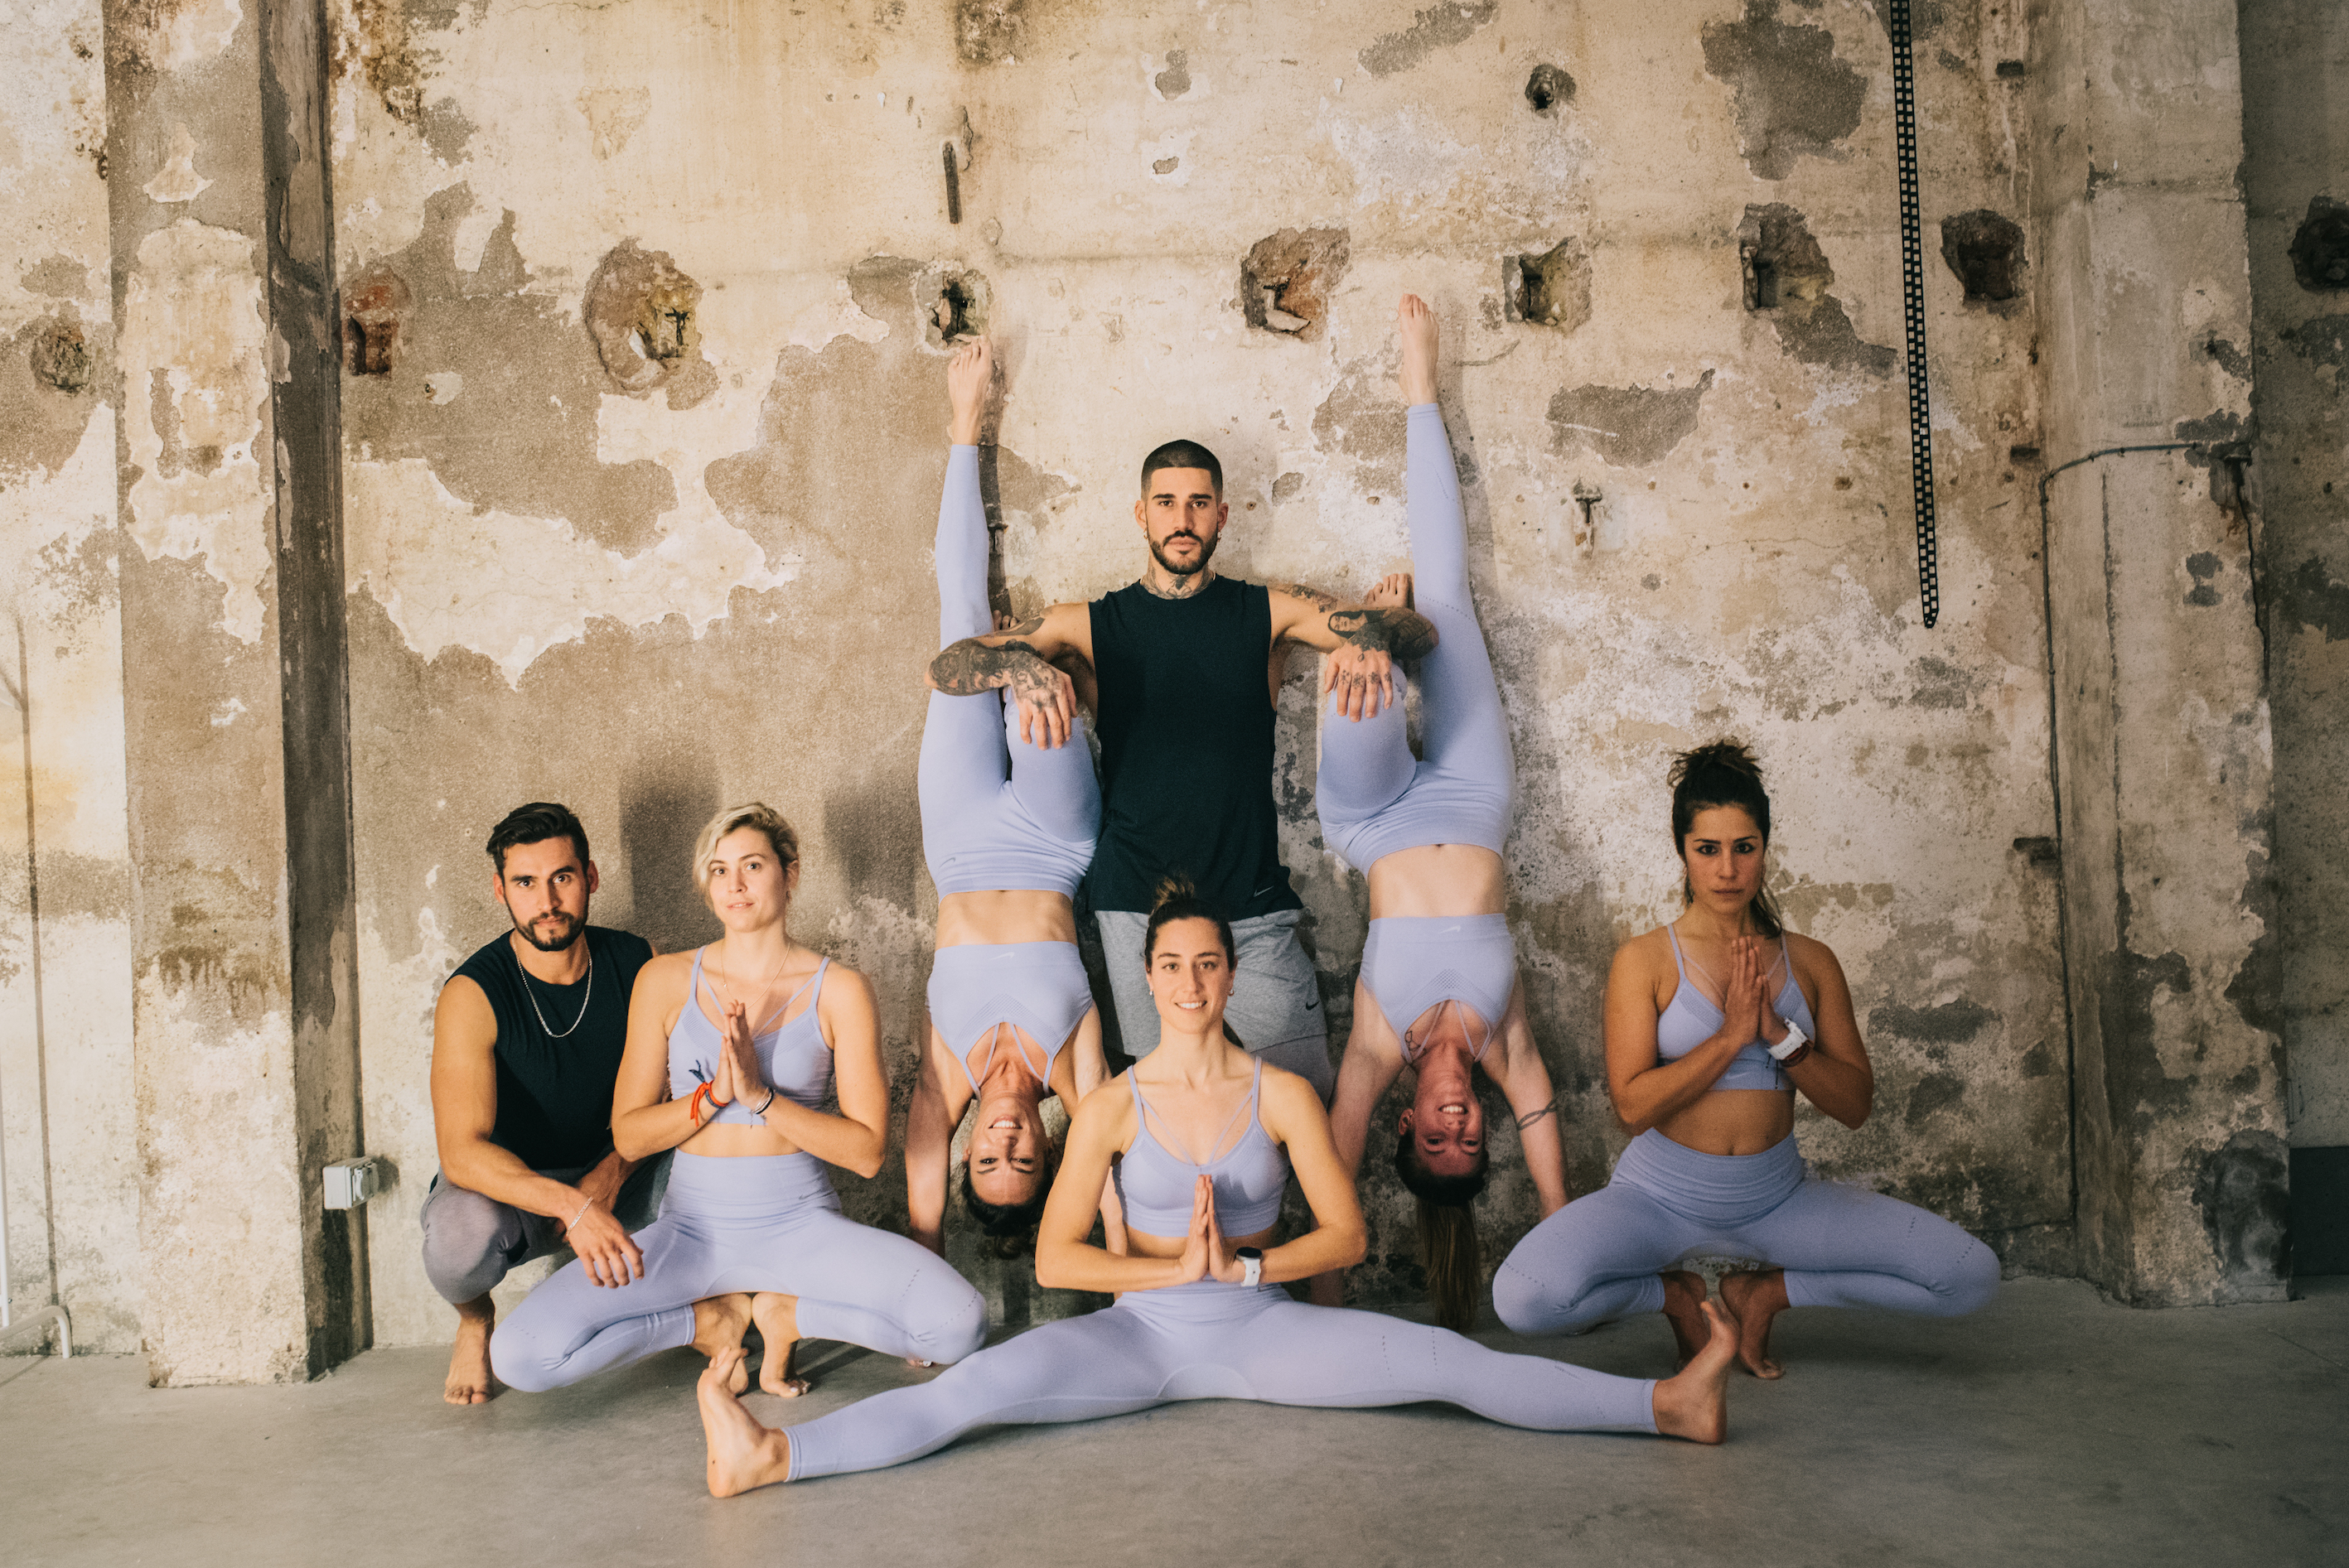 NIKE Training recalca la importancia del Yoga en su colección NIKE YOGA